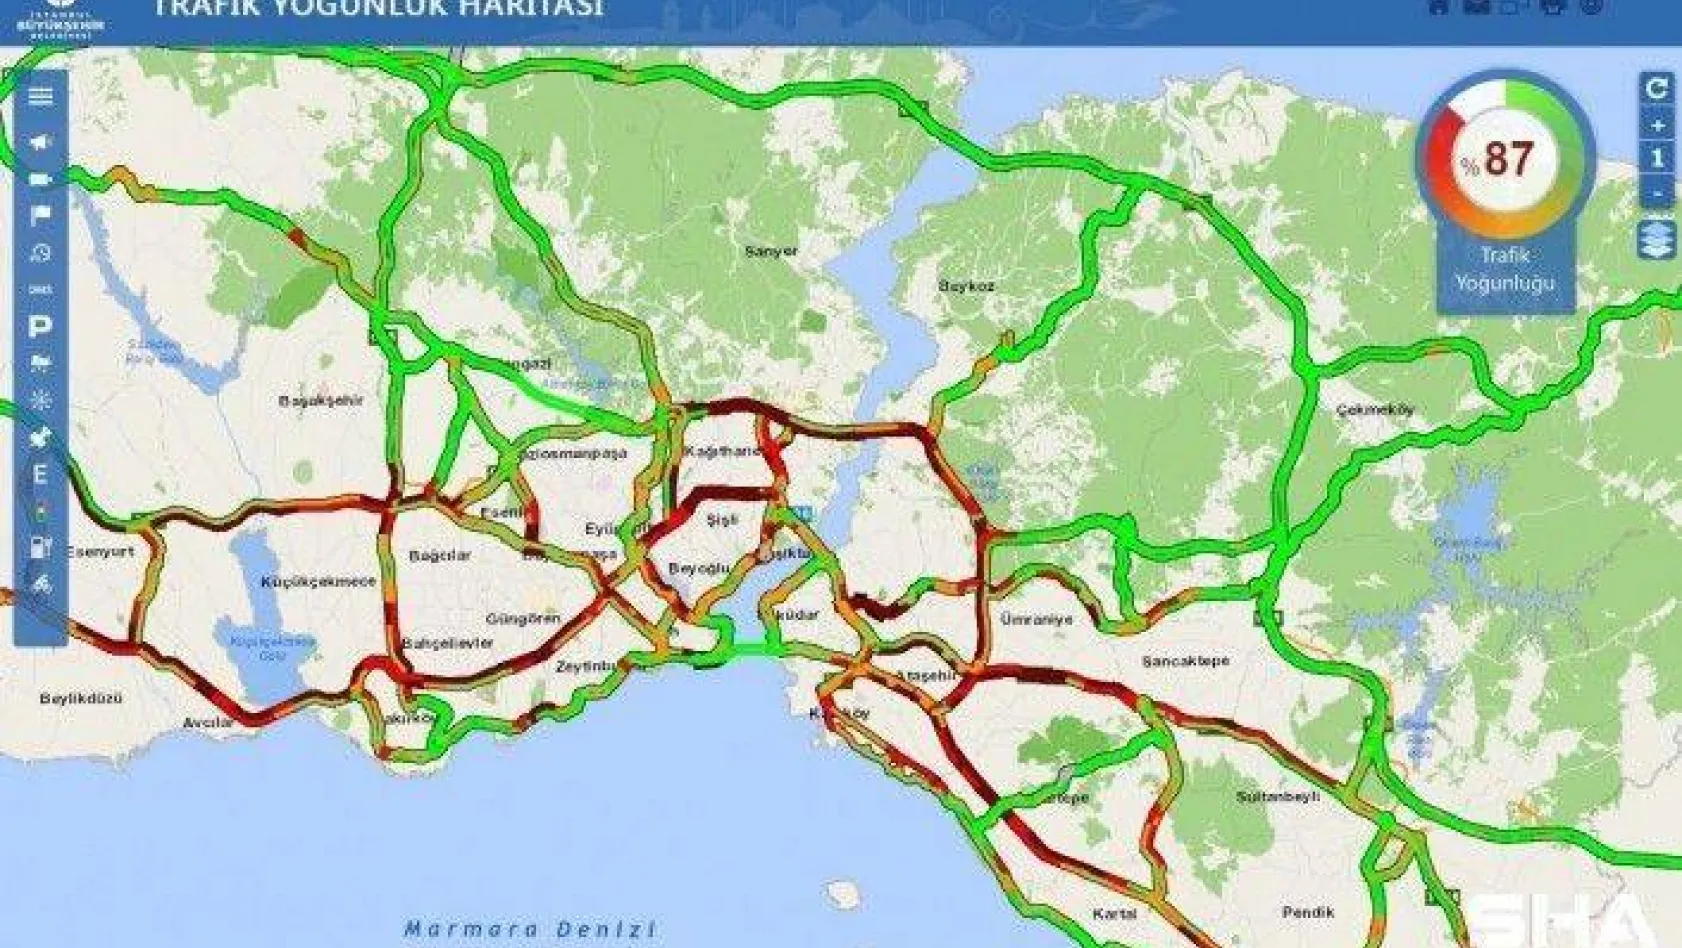 İstanbul'da yağmur trafiği felç etti, yoğunluk yüzde 87 seviyesine ulaştı